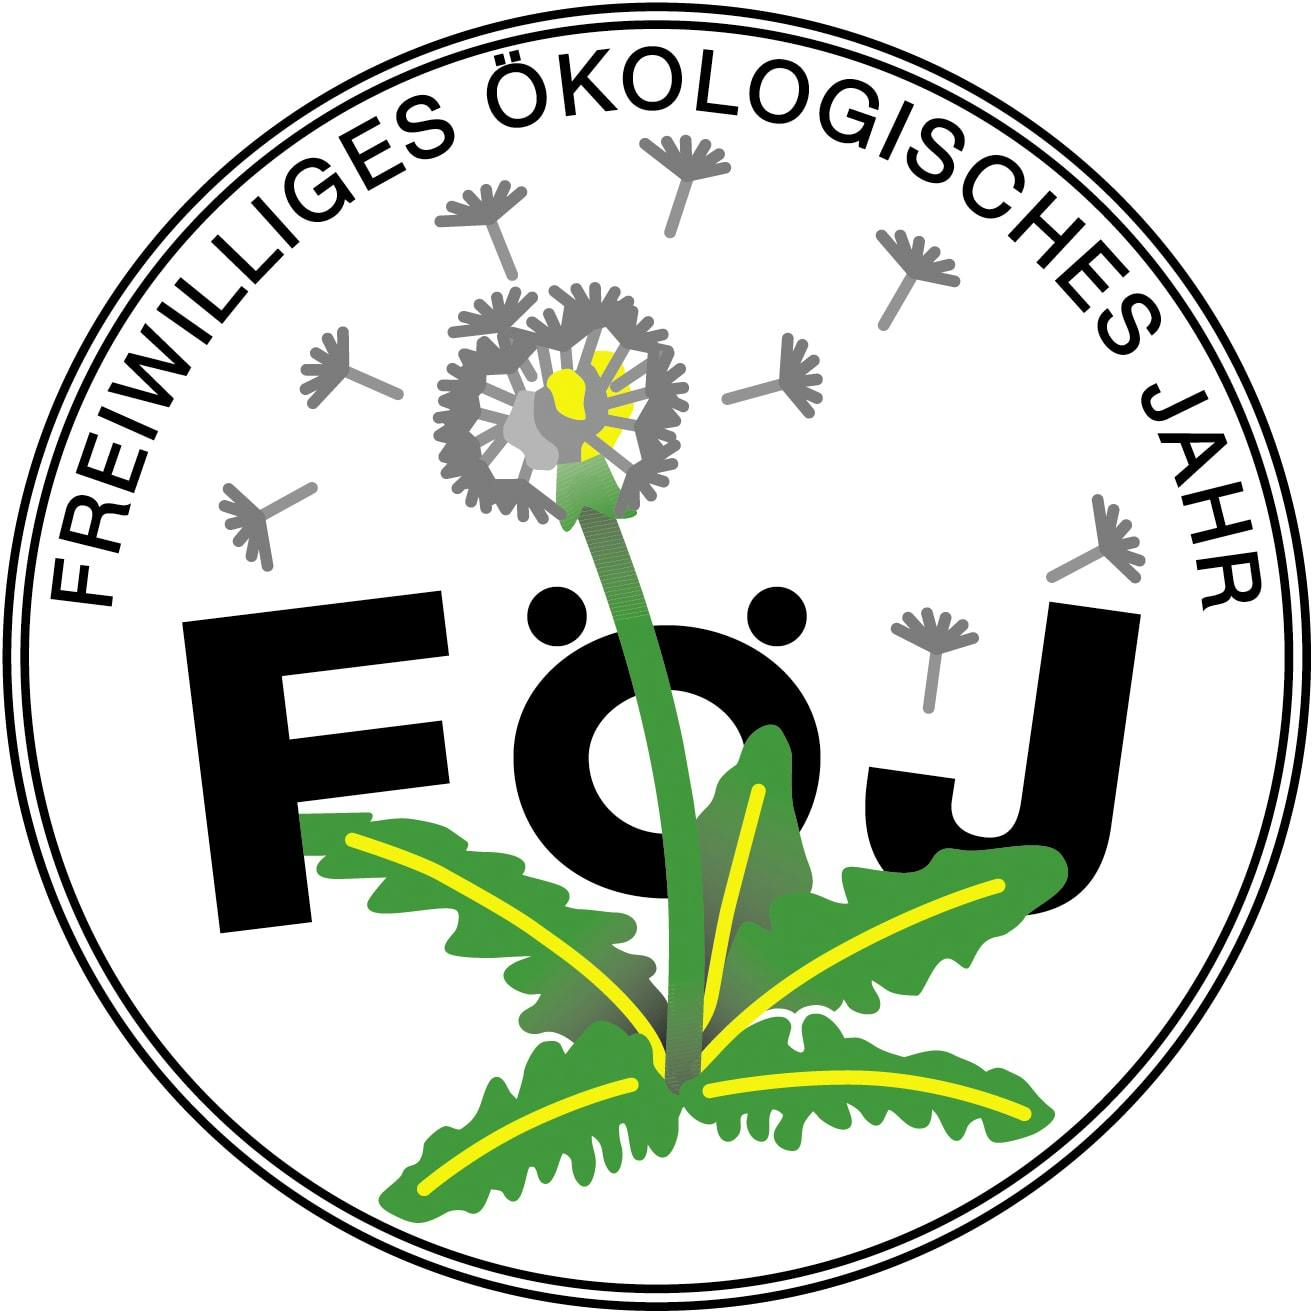 Förderverein Ökologische Freiwilligendienste (FÖF) e. V. logo